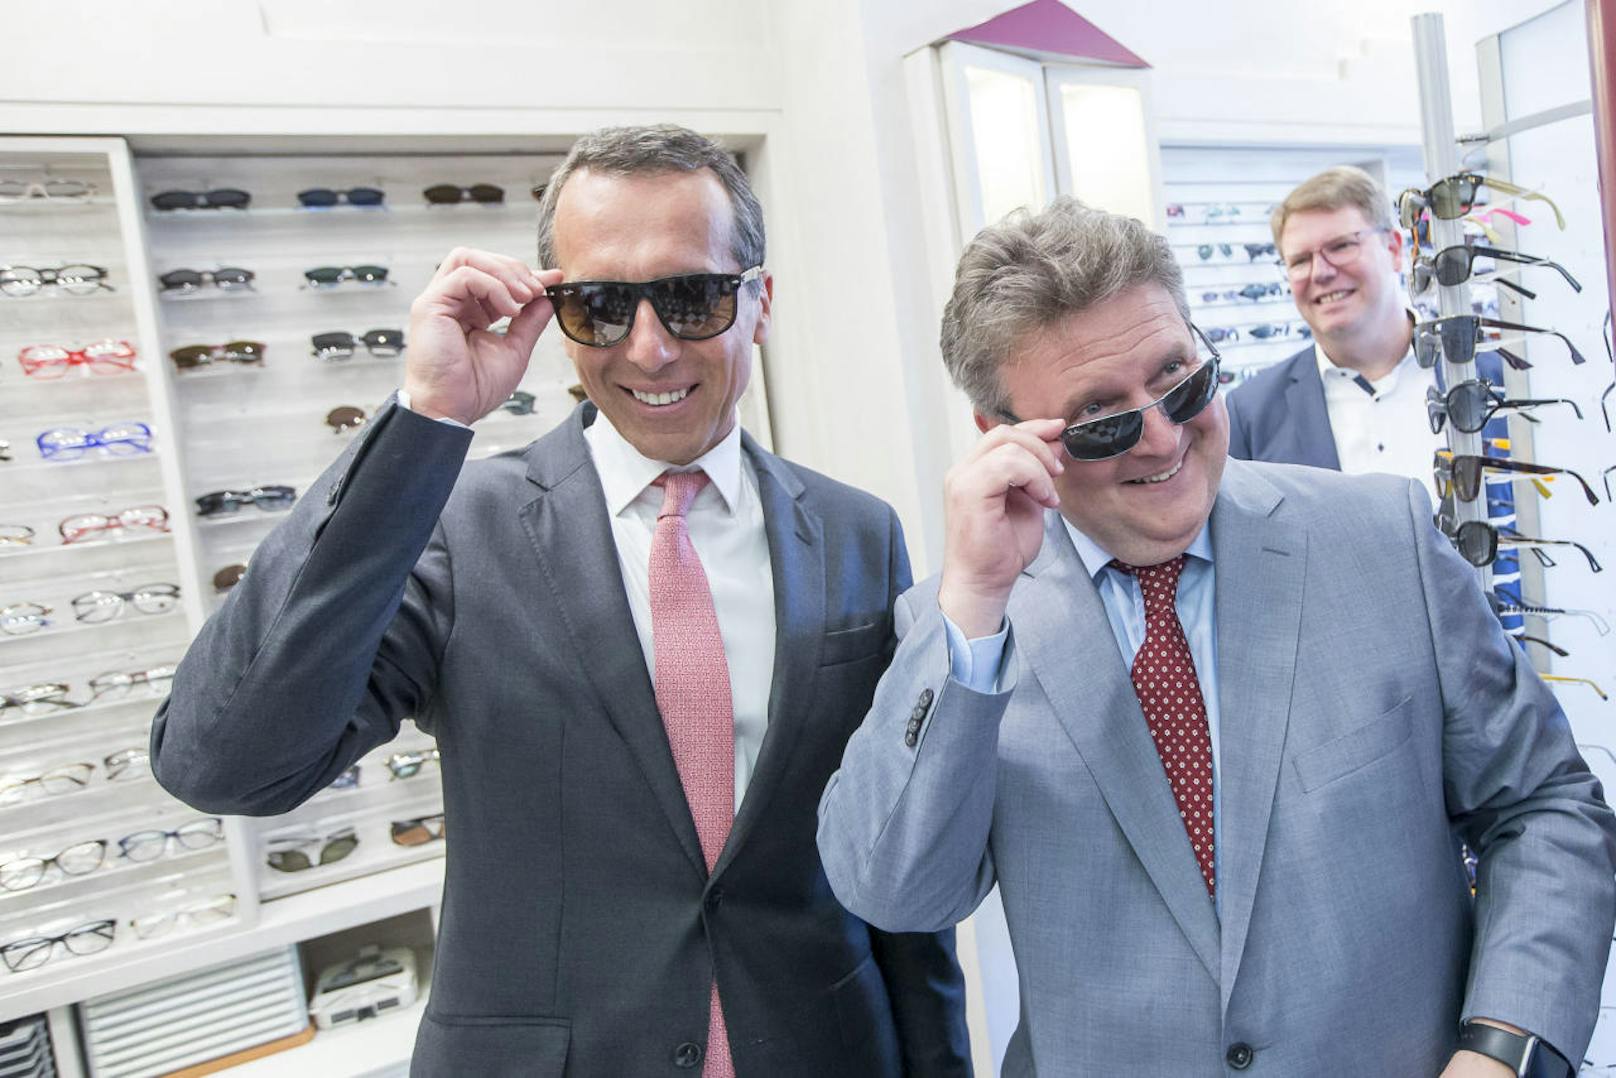 Beim Brillen-Test hatten SP-Chef Kern und SP-Wien-Chef Michael Ludwig sichtlich Spaß.